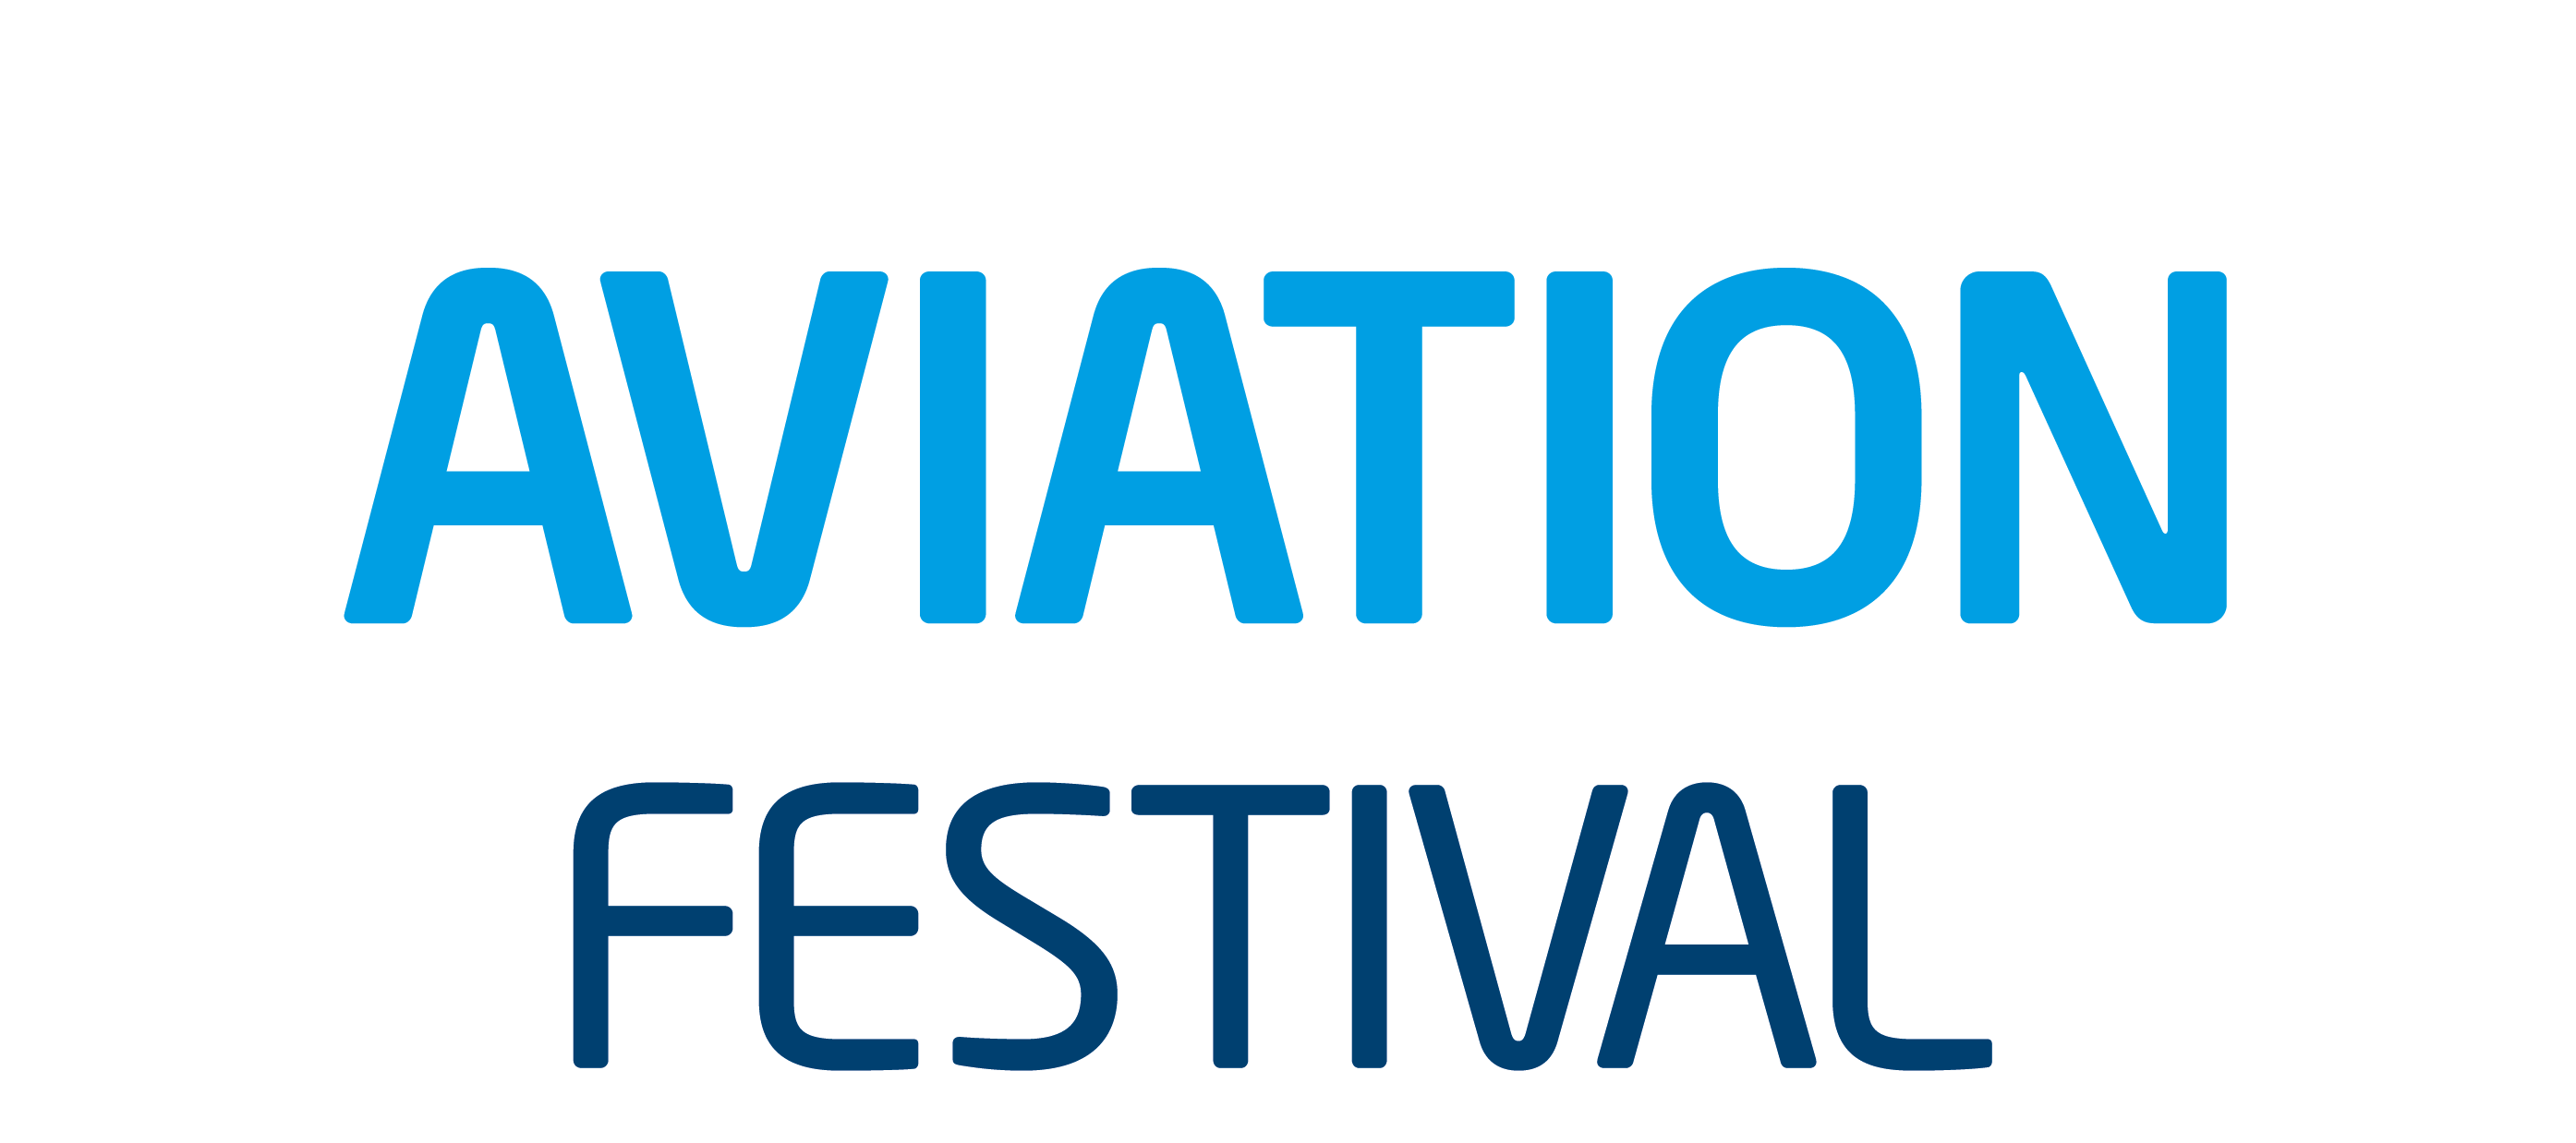 sponsorship opportunities World Aviation Festival 2023